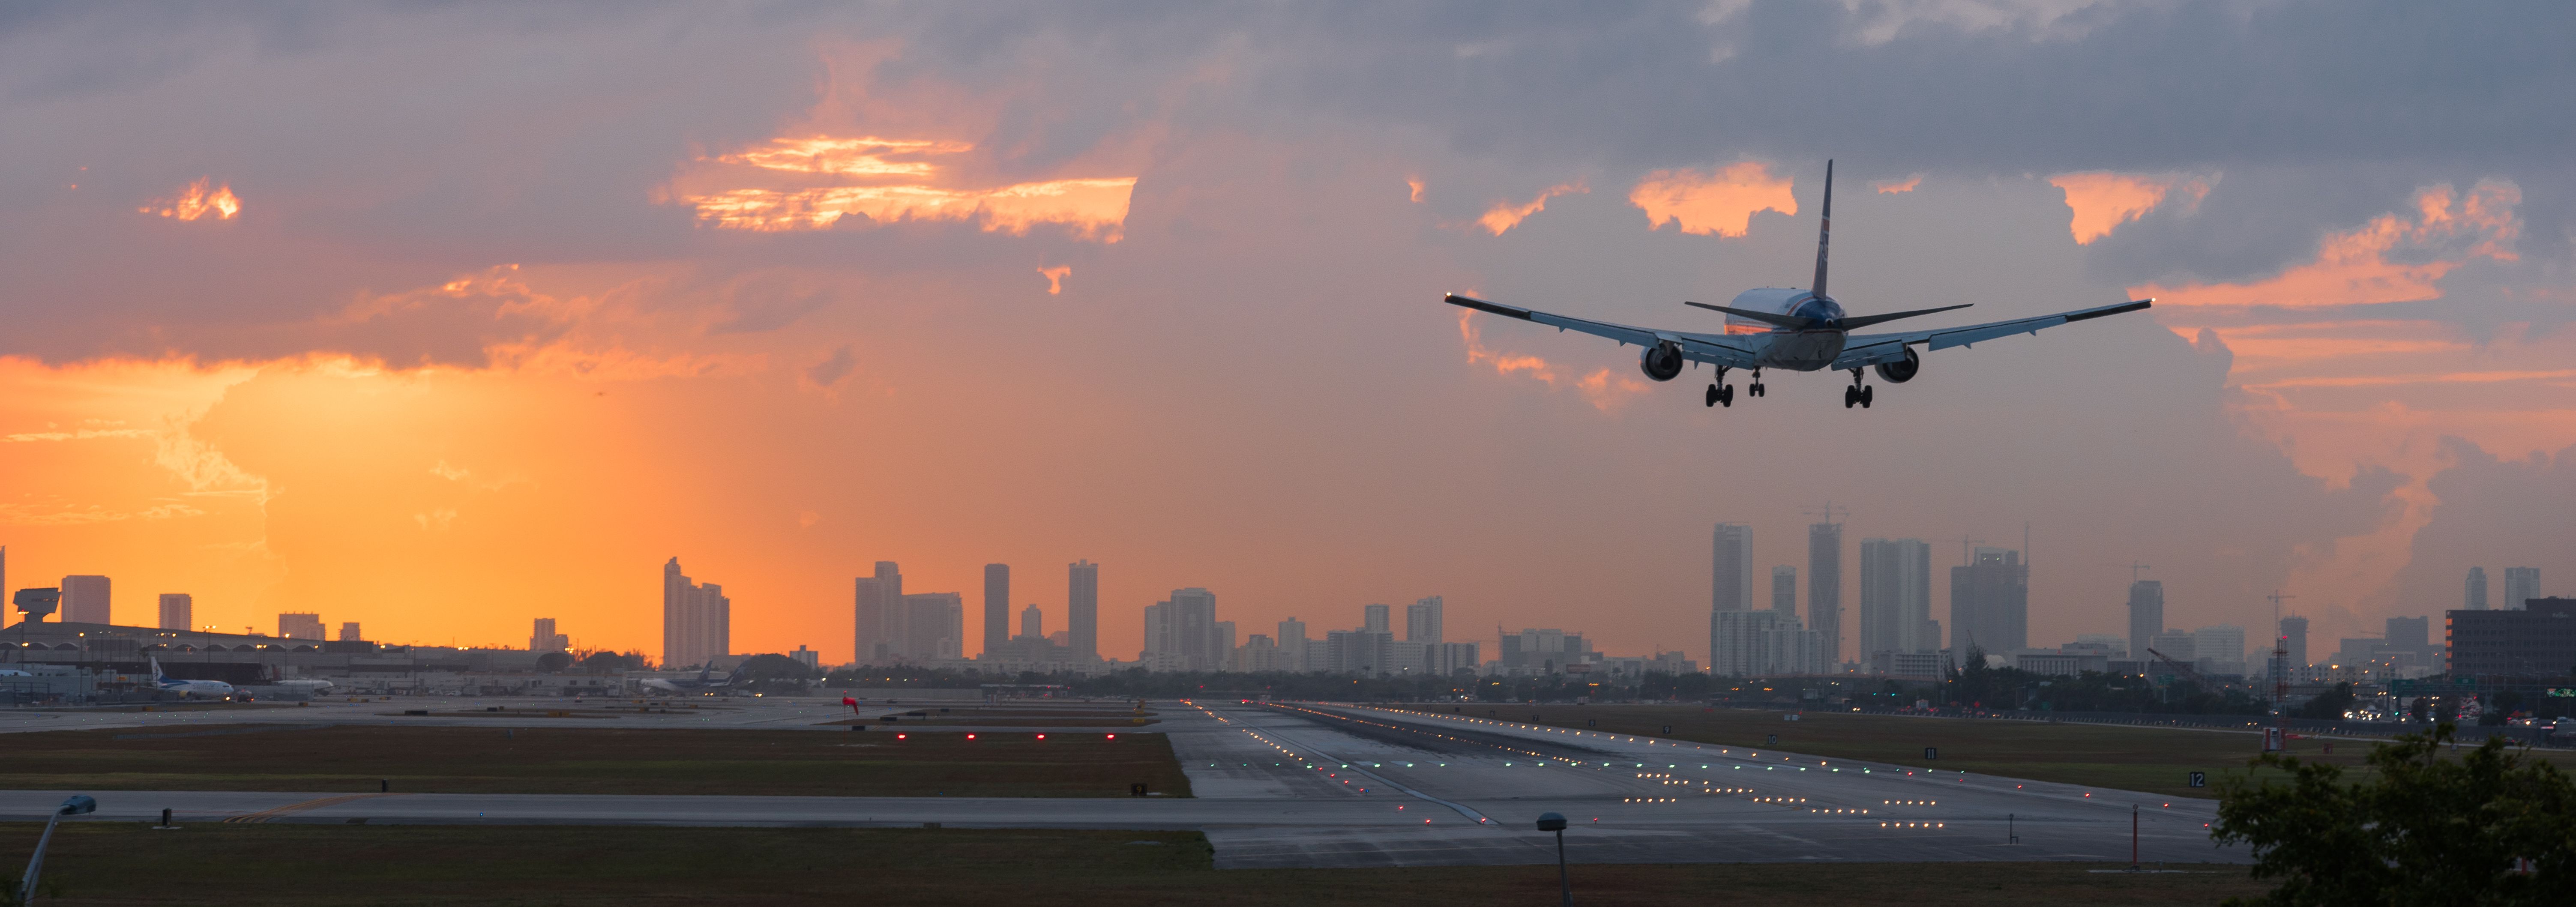 Miami Airport landing